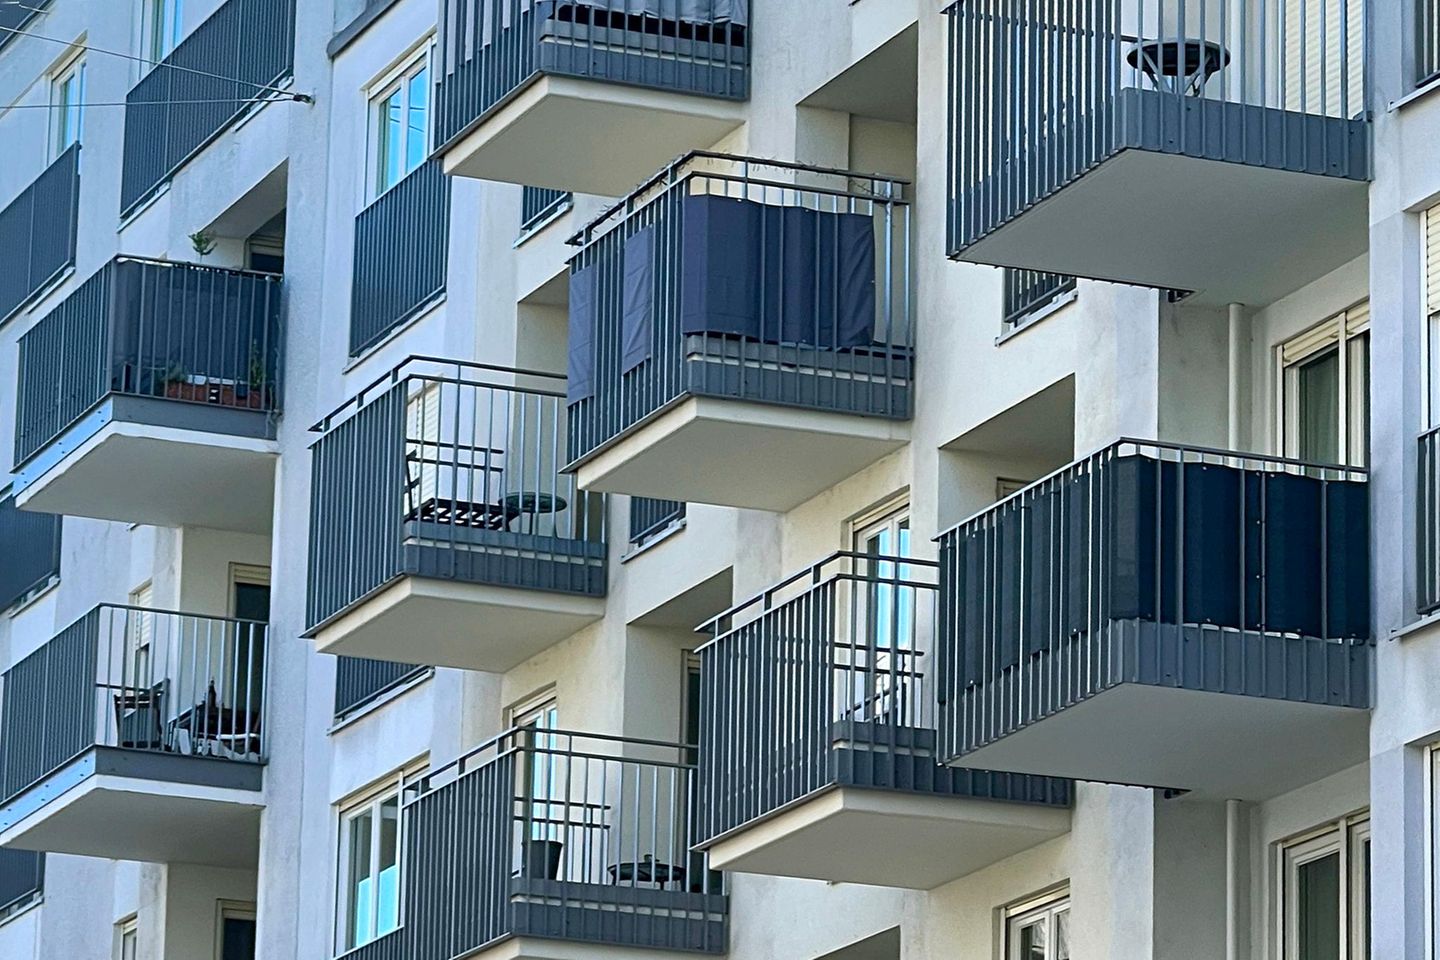 Häuserfront mit Balkonen in München